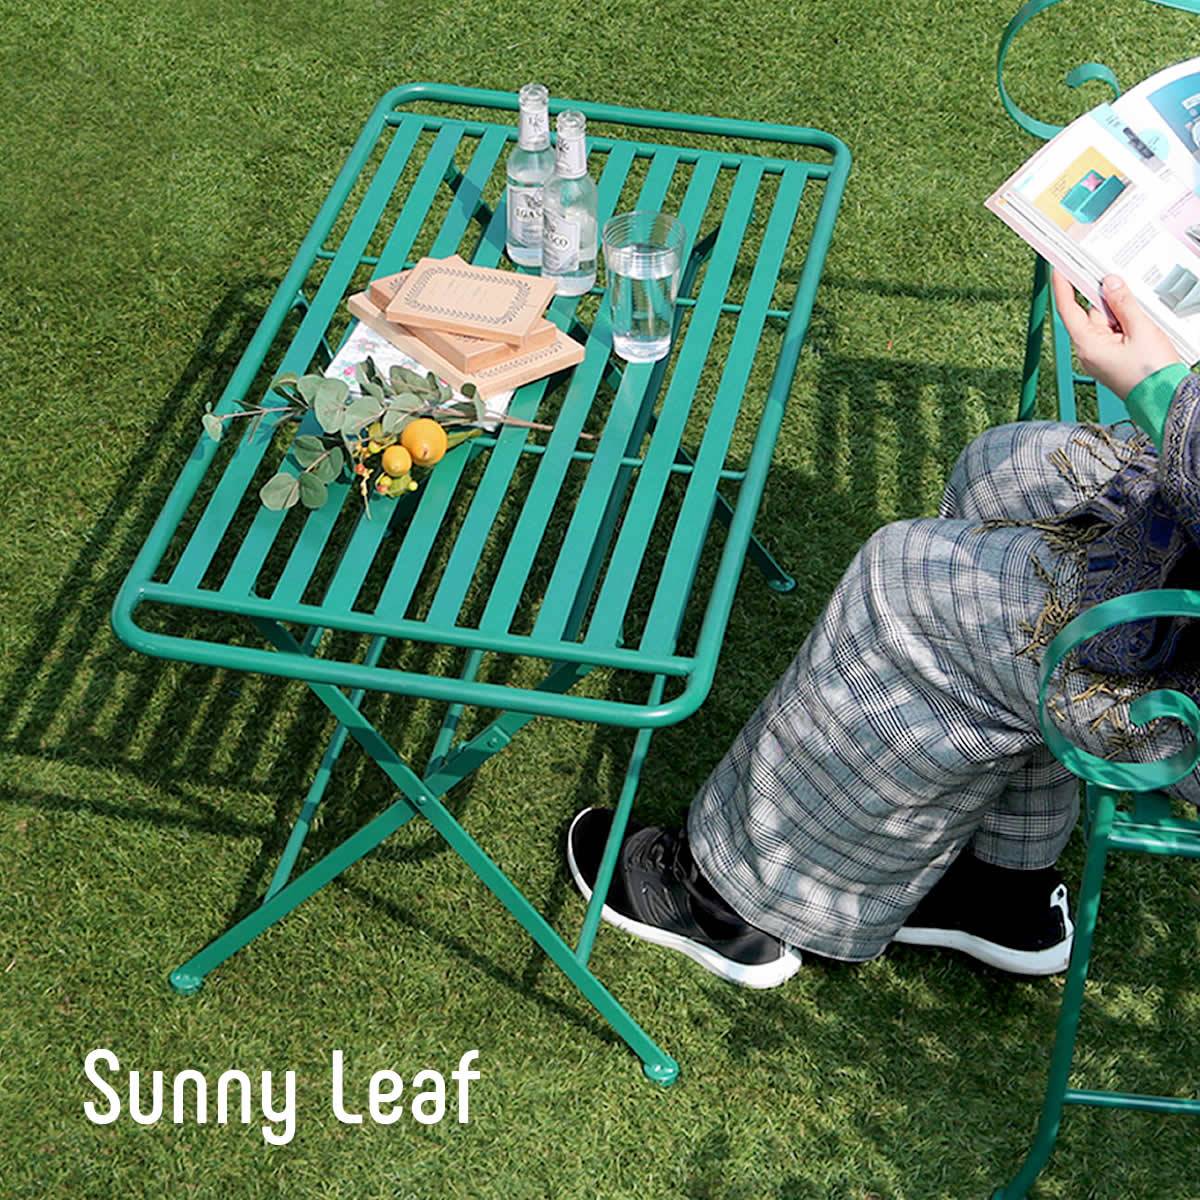 アイアン製ローテーブル単品販売 「Sunny Leaf（サニーリーフ）」 SPL-9003